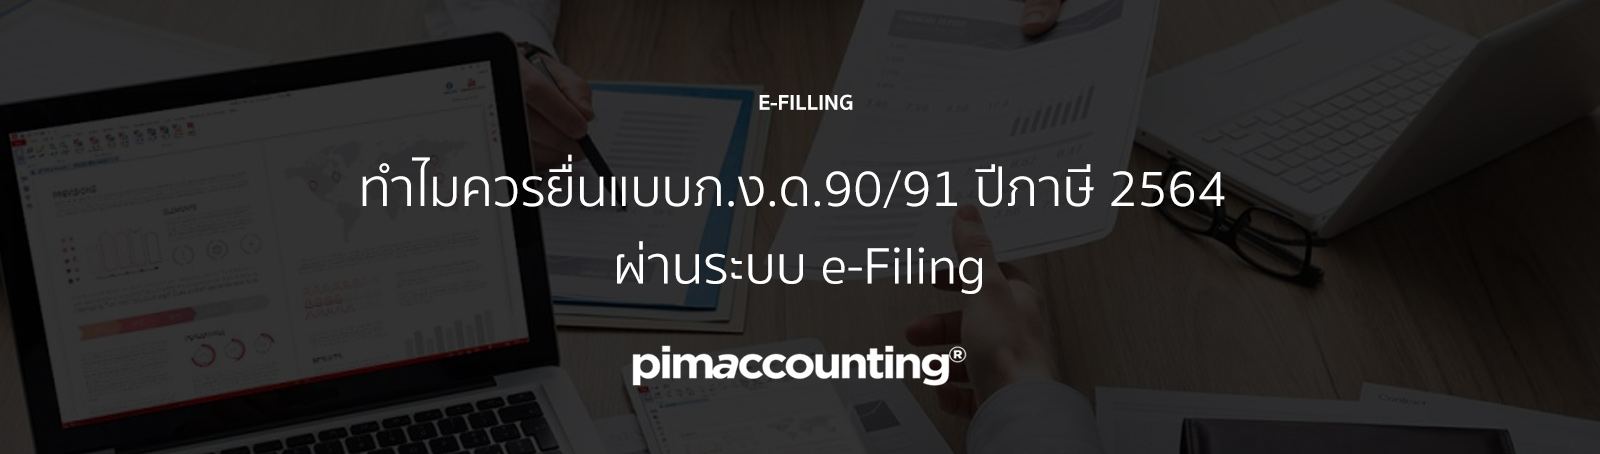 ปีภาษี 2564 ผ่านระบบ e-Filing